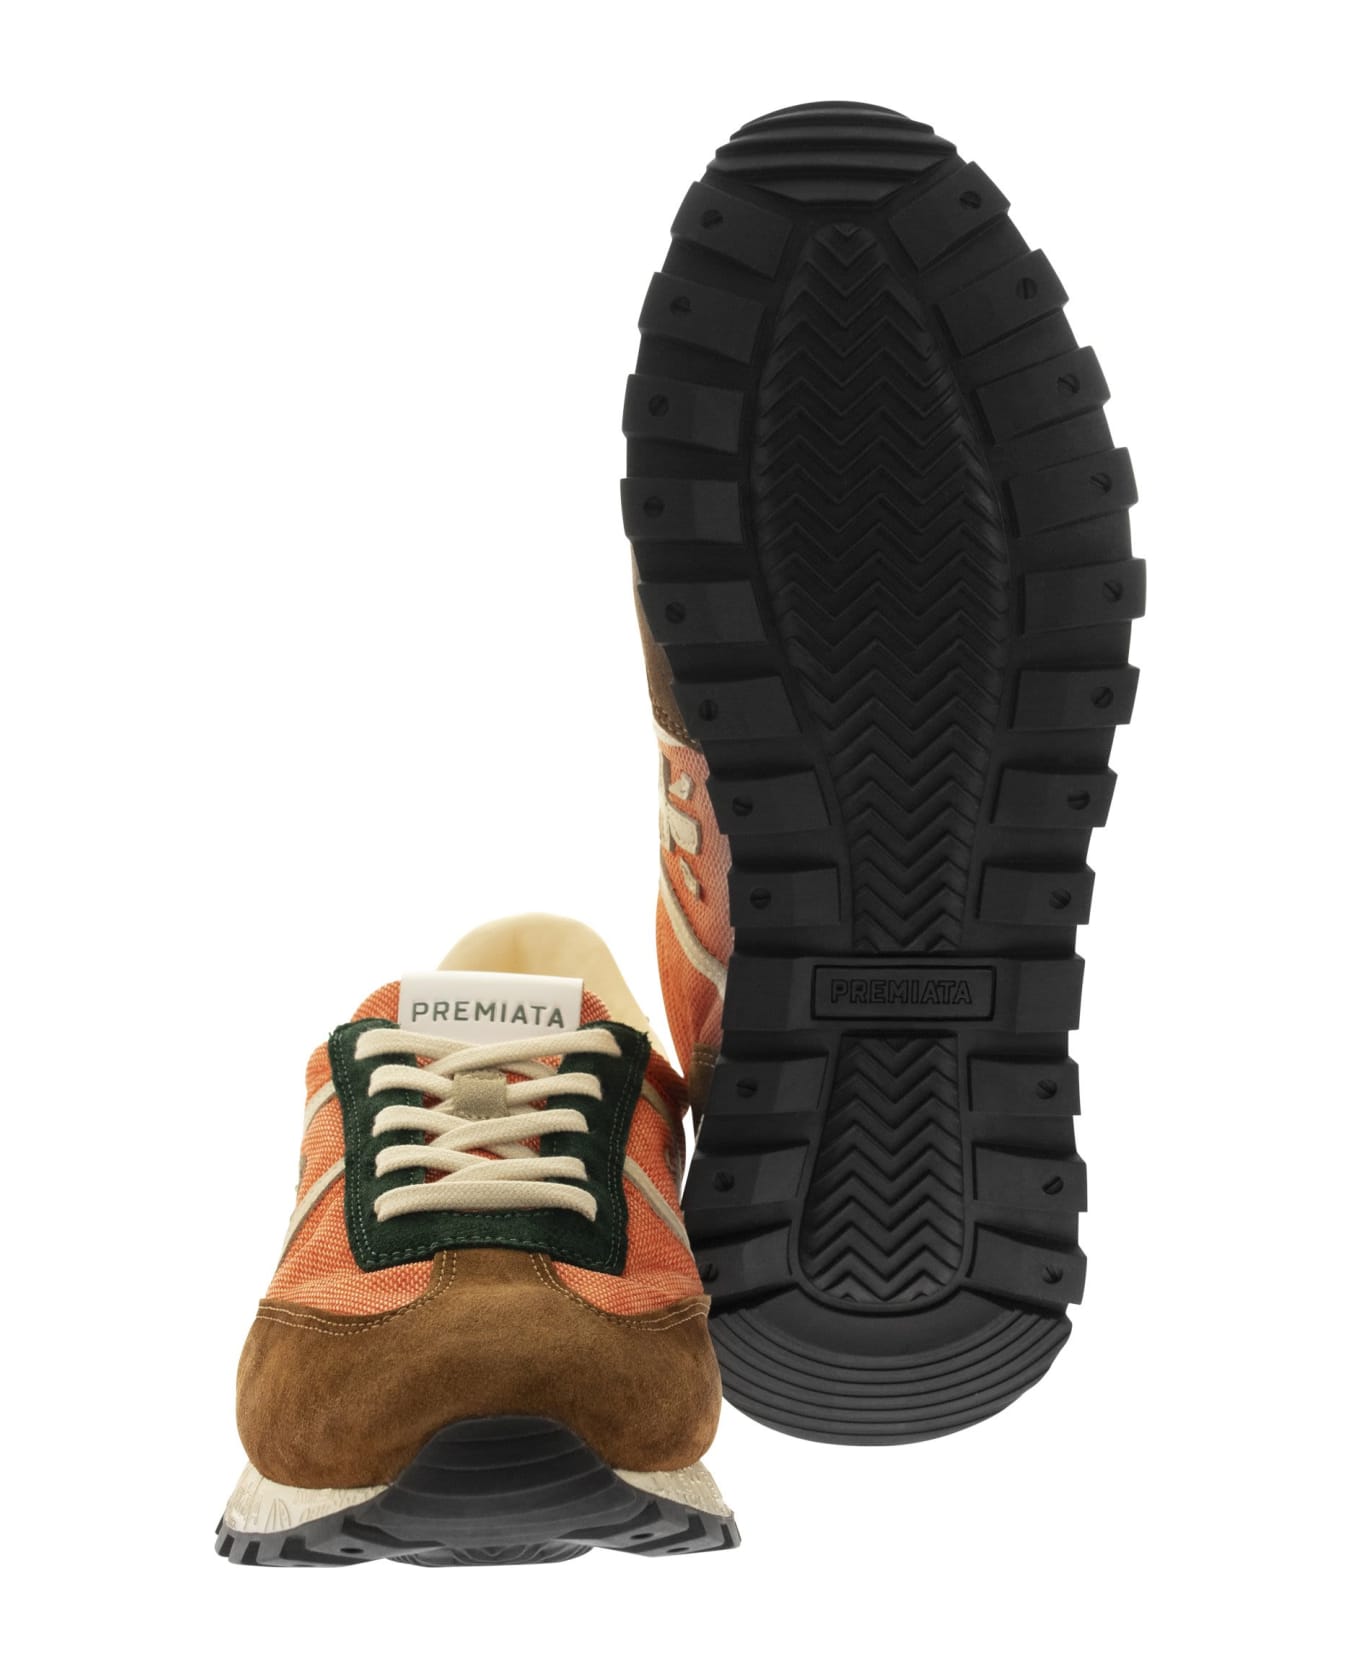 Premiata Johnlow 5981 - Sneakers - Arancione スニーカー